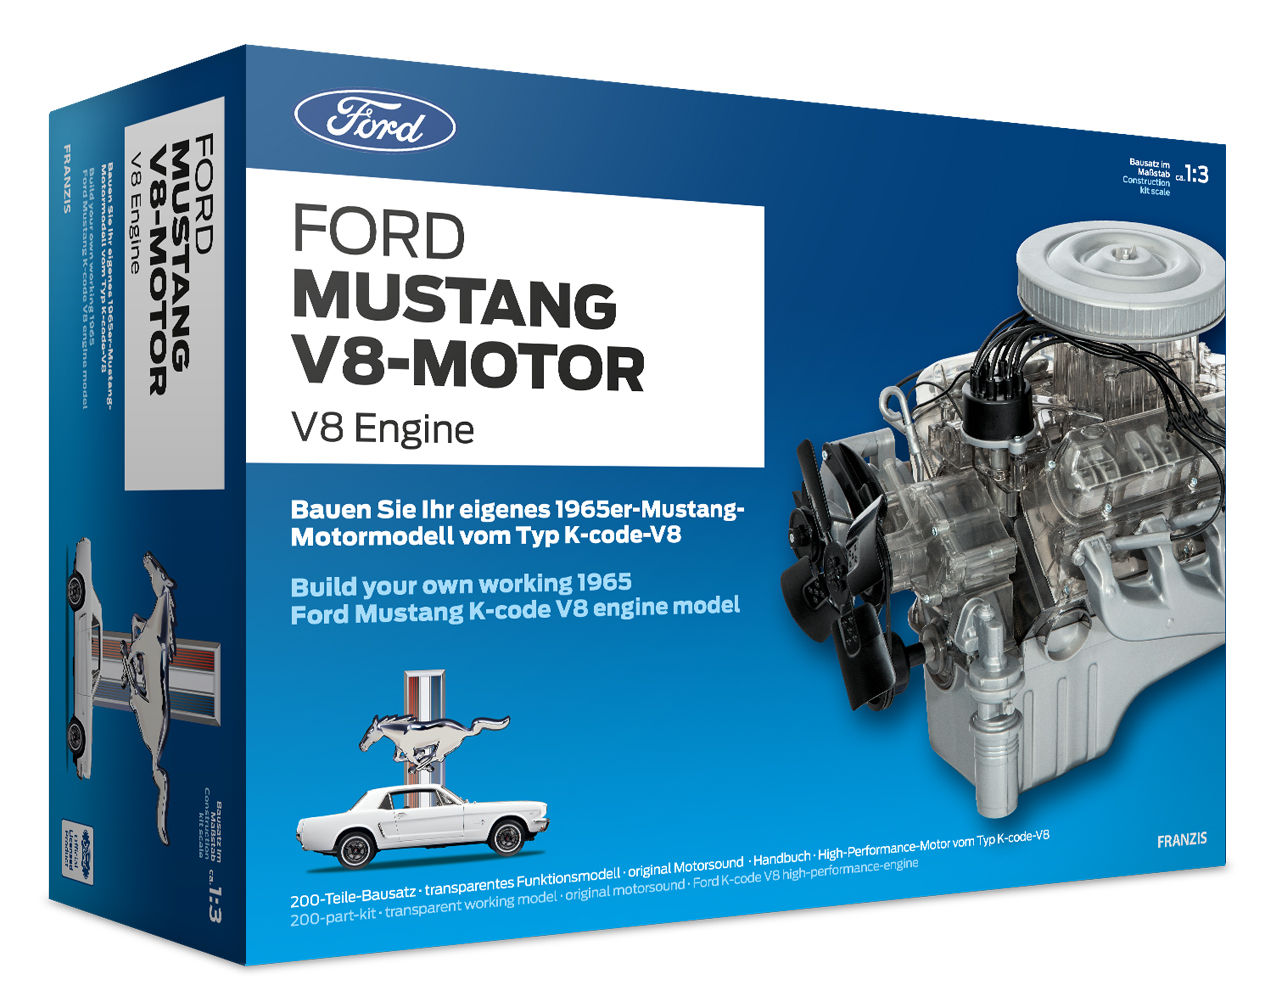 Ford Mustang V8-Motor
Ford Mustang V8-Motor
Ford Mustang V8-Moto